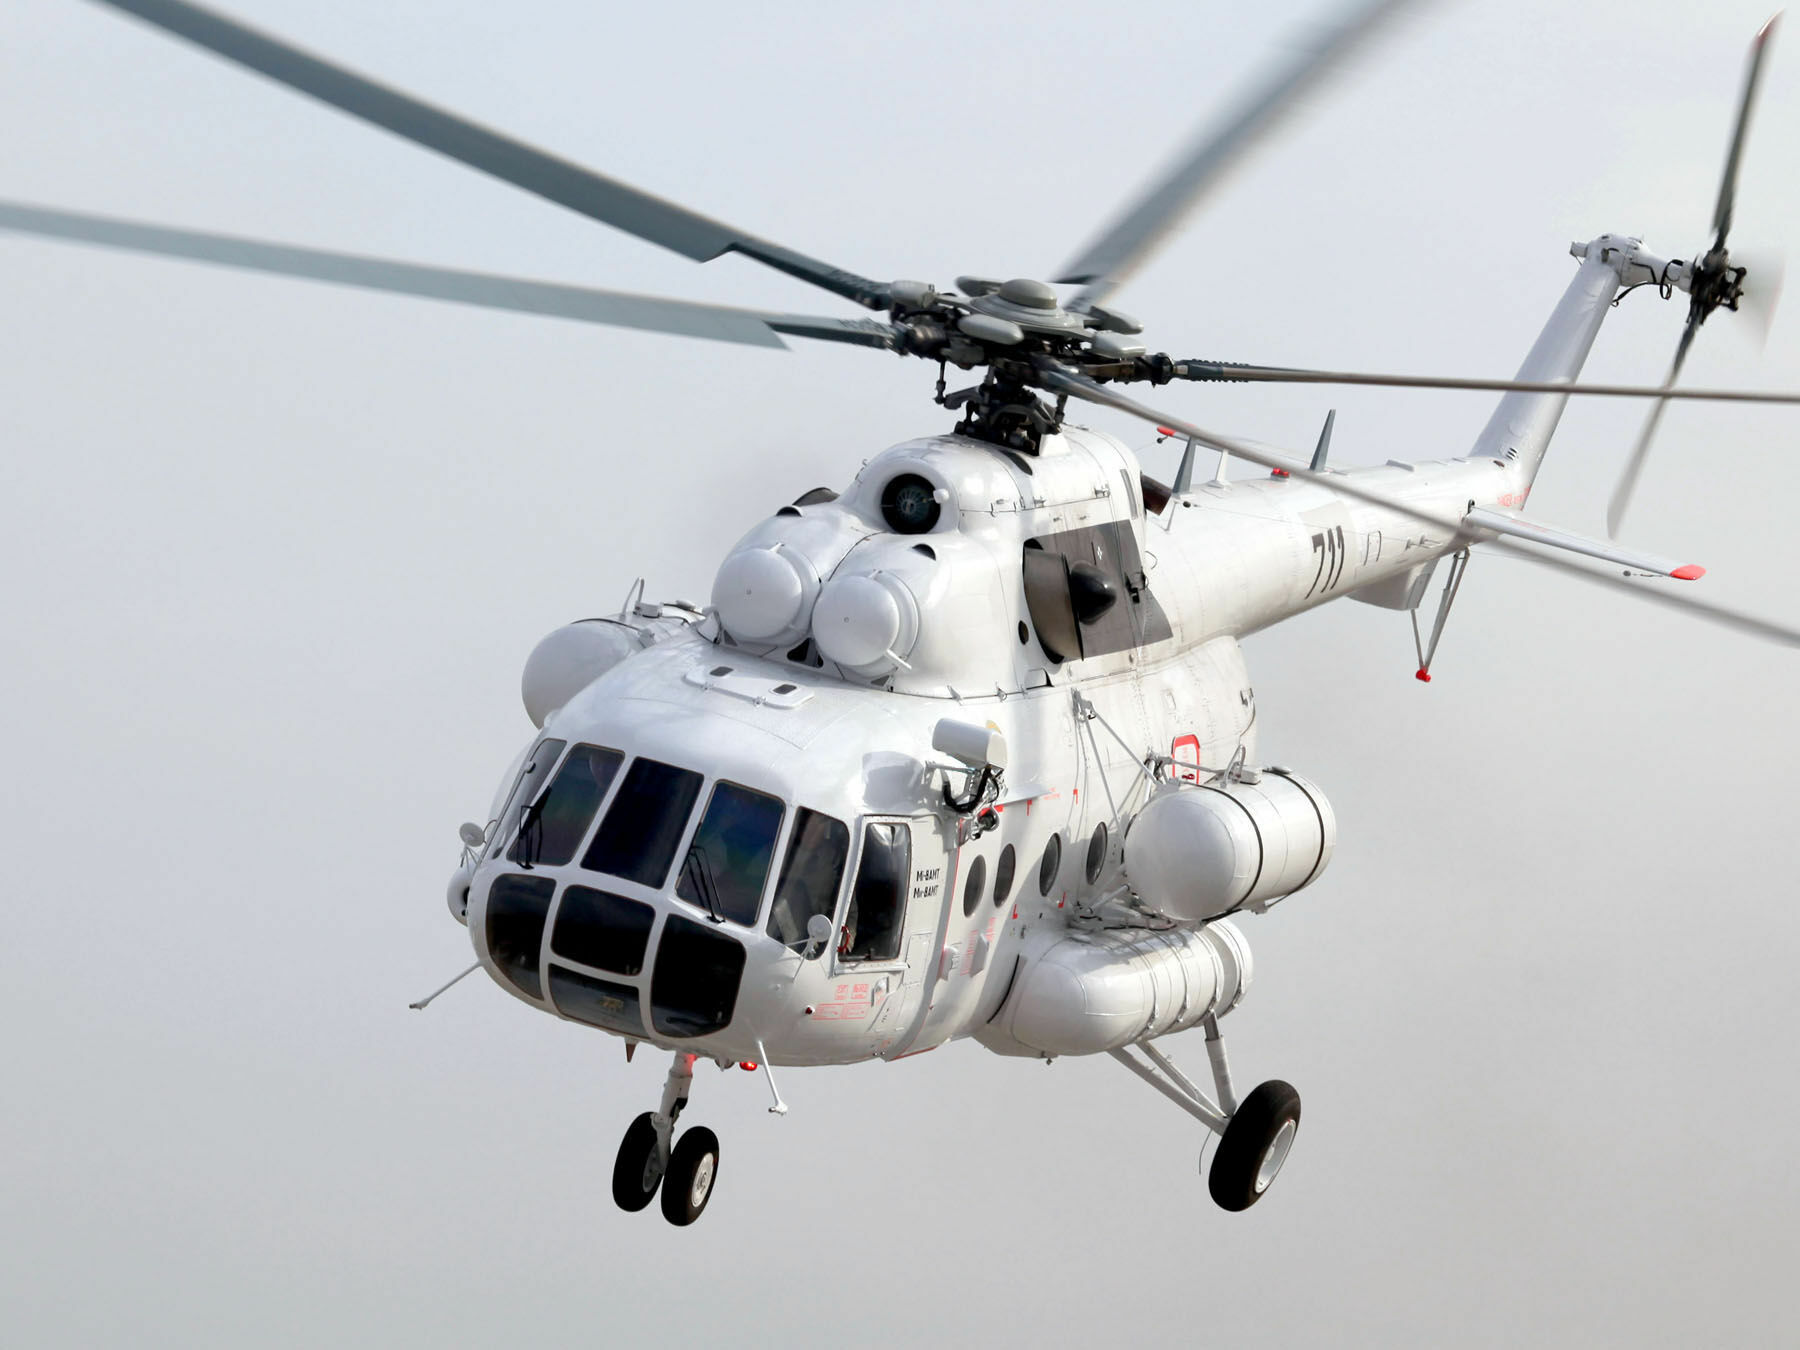 Вертолет Ми-8 совершил жесткую посадку в Югре